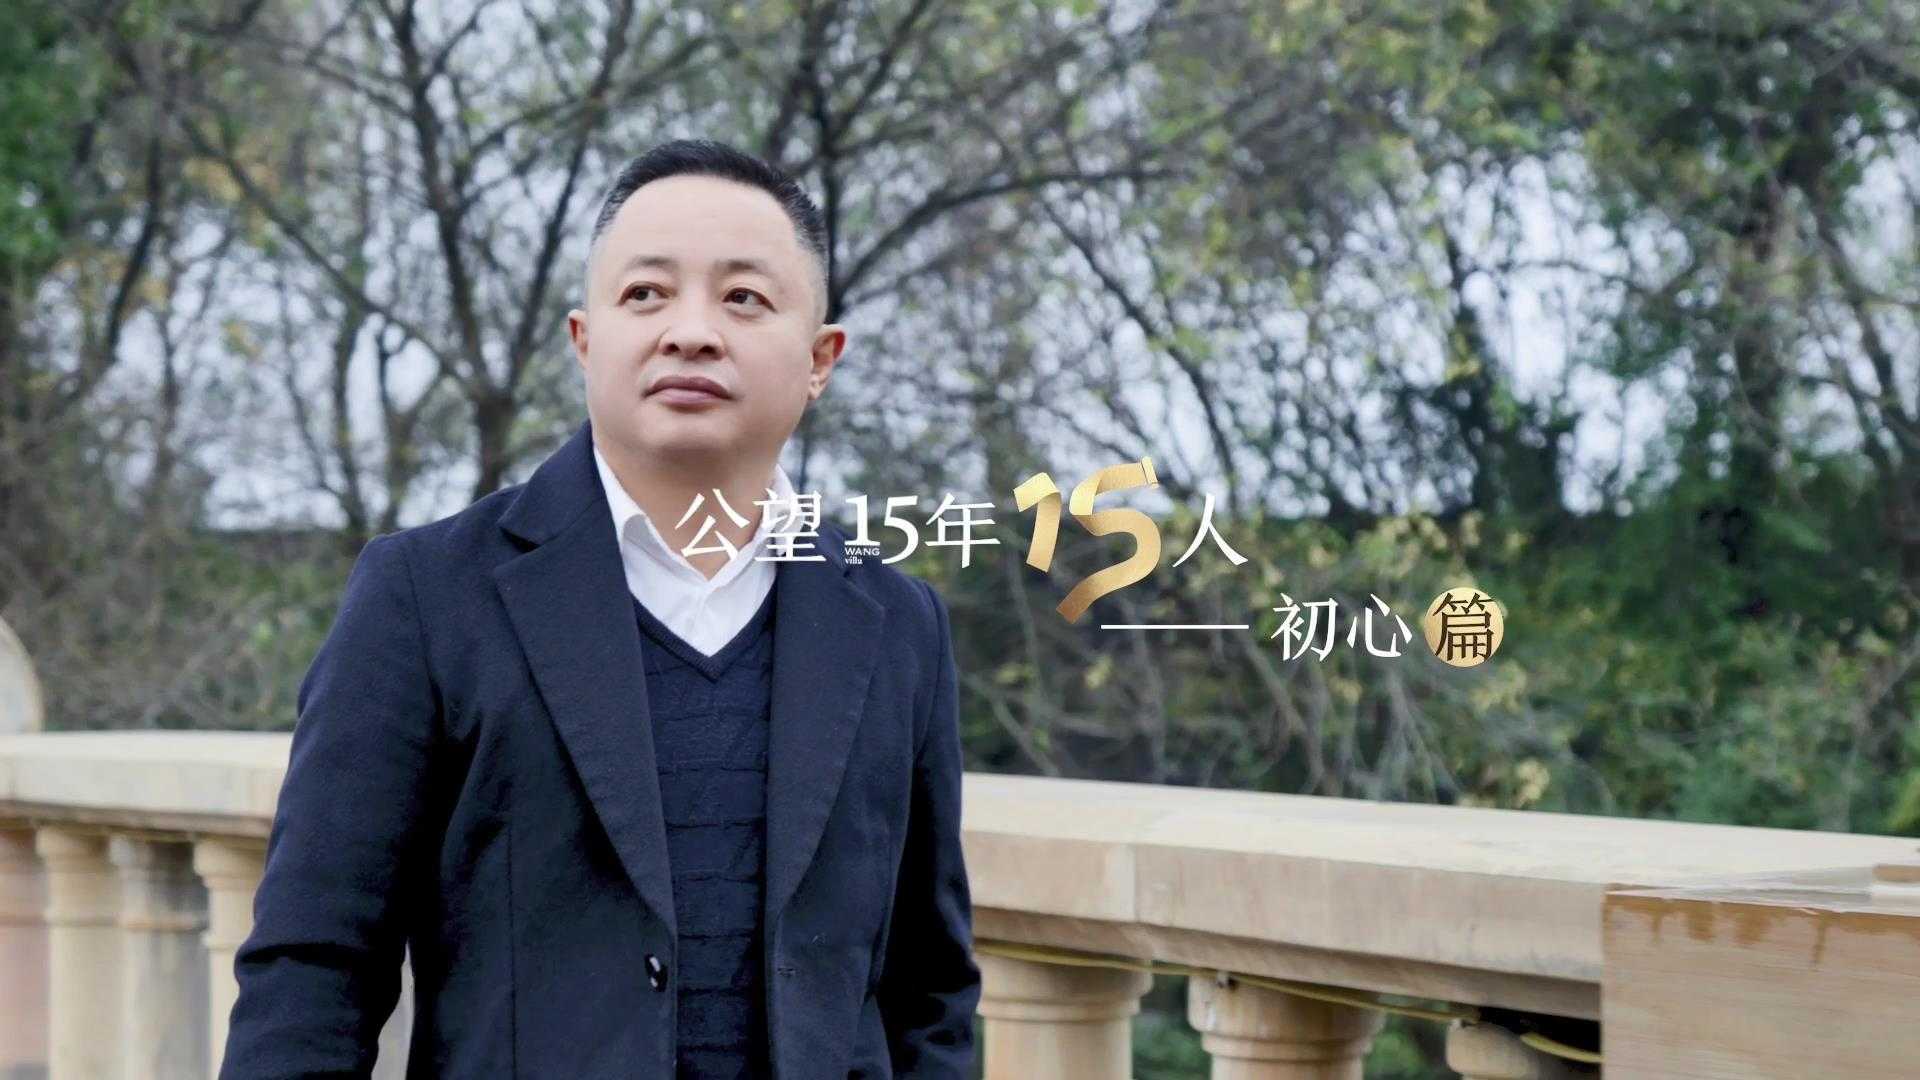 15年传承匠心的匠人精神打造出的精工别墅 | OUOFILMS X 杭州万科